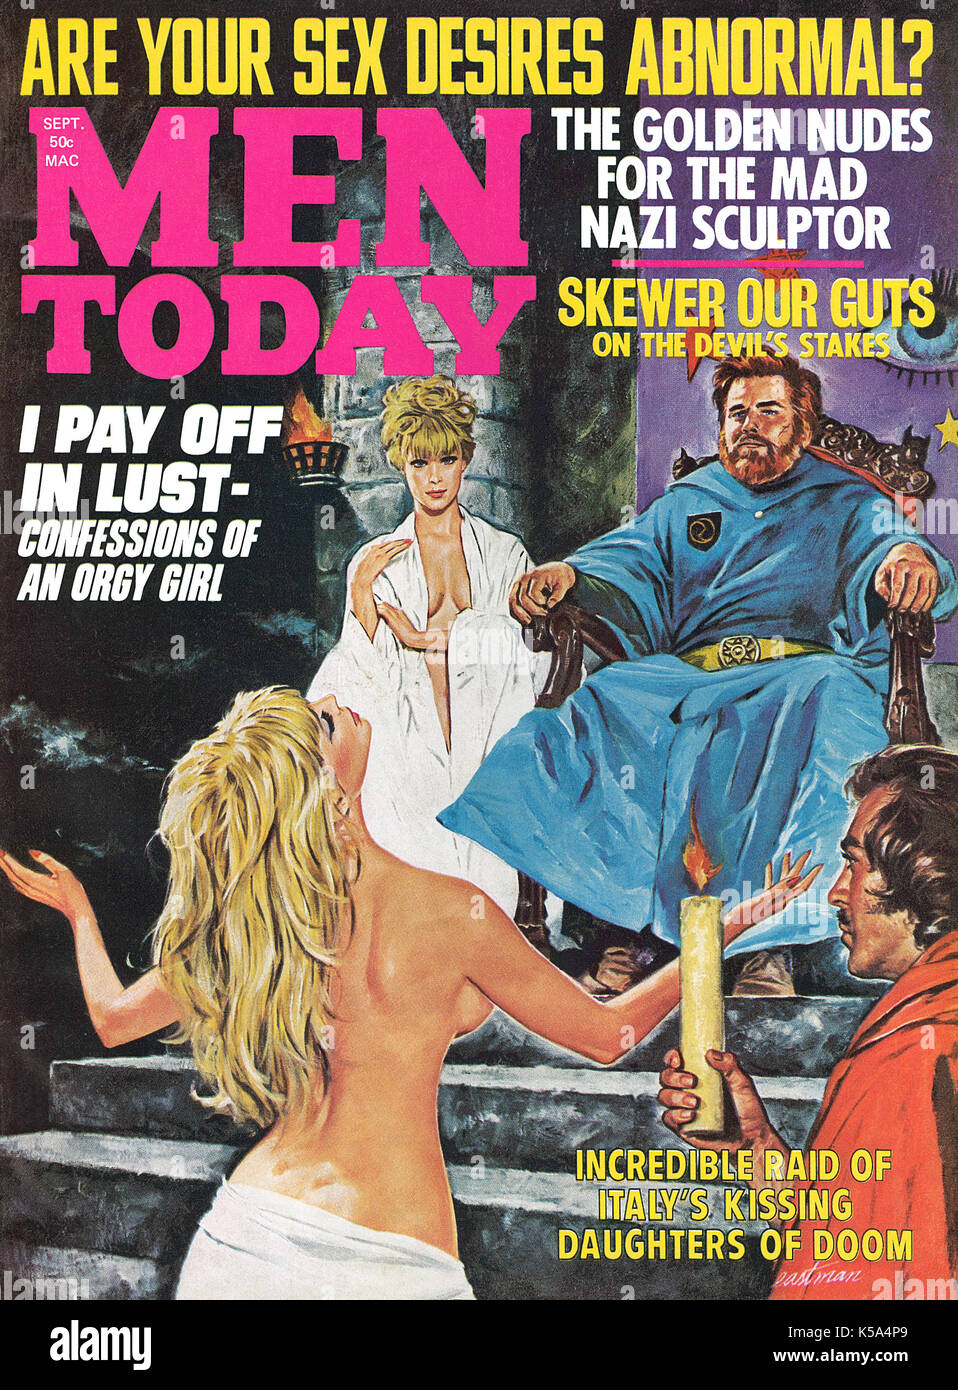 Vordere Abdeckung der Männer Magazin Männer heute, im September 1970. Illustration von Eastman. Stockfoto